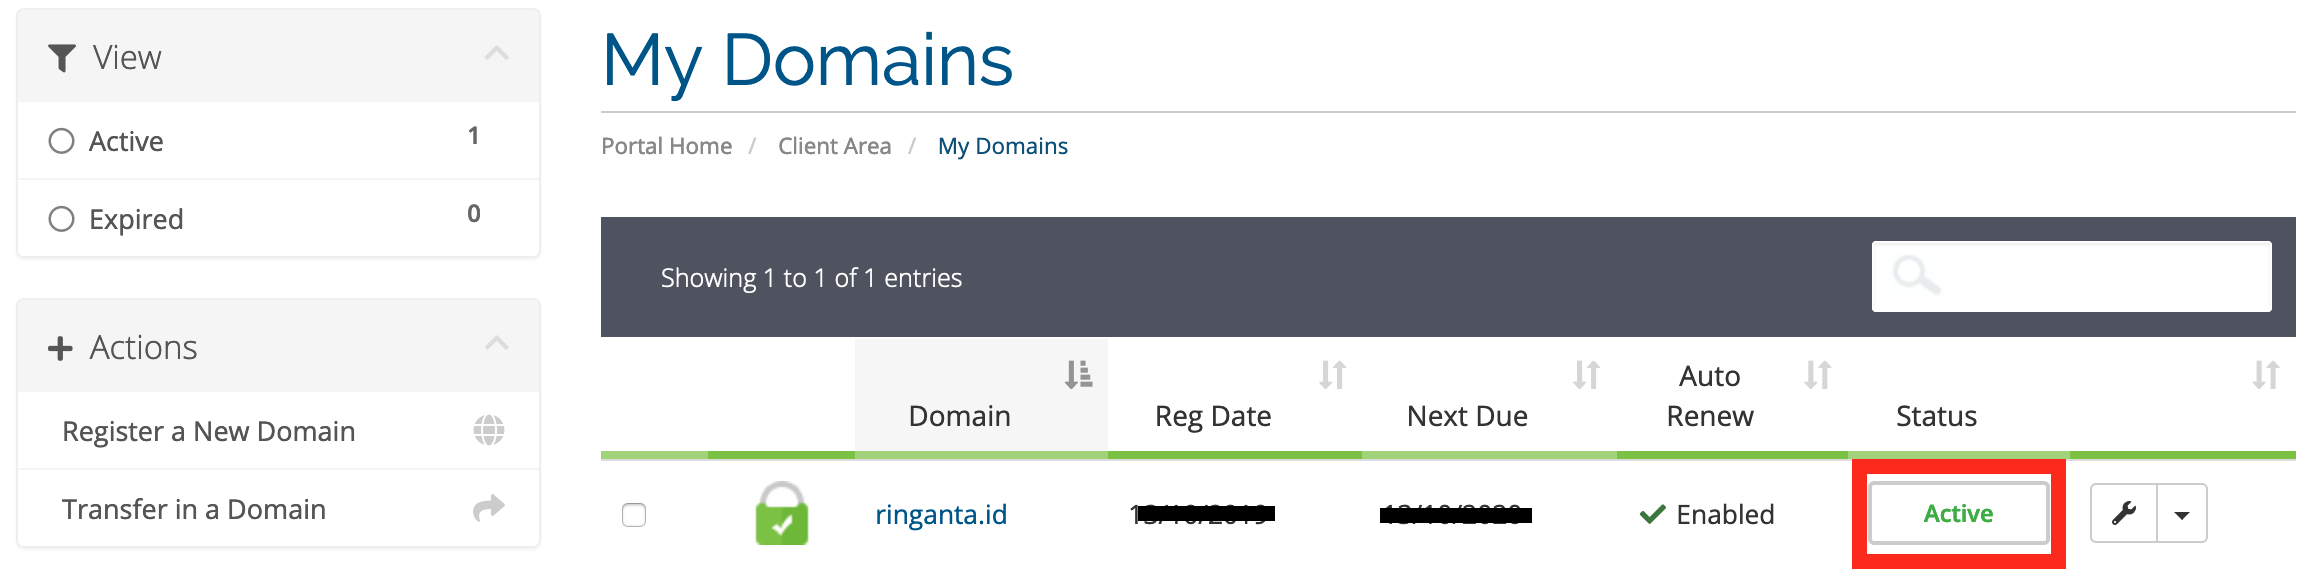 Domain Status